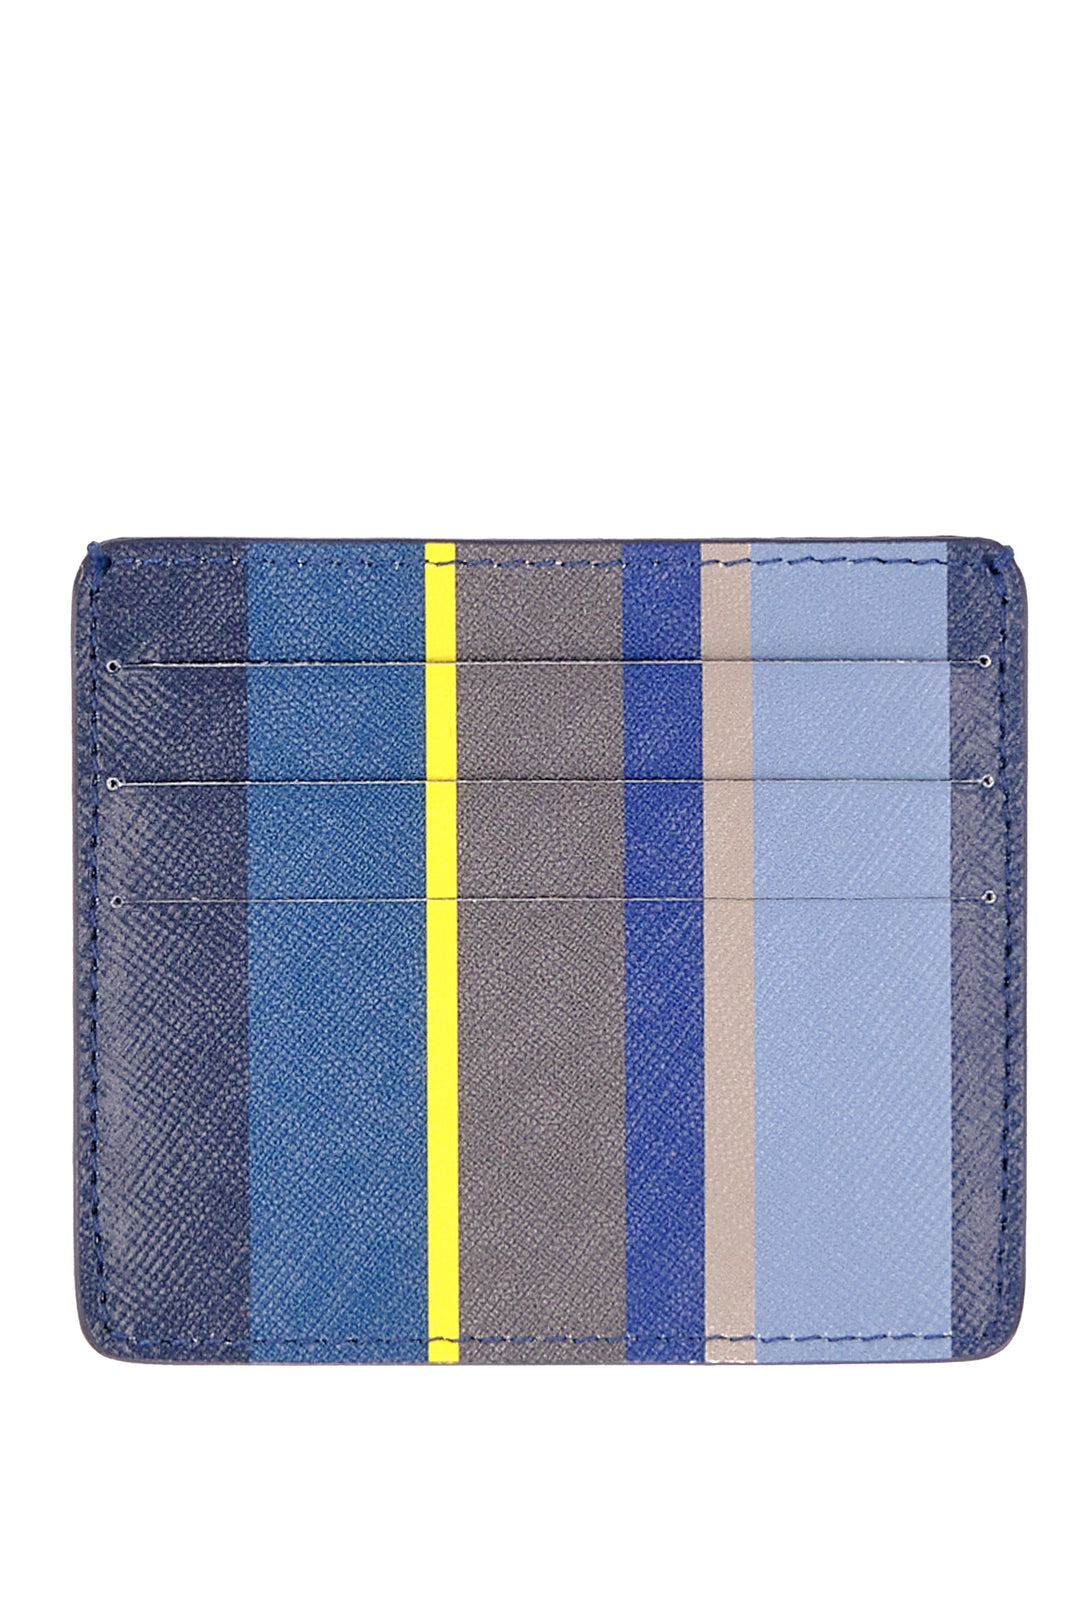 GALLO Porta carta di credito pelle blu righe multicolor - Mancinelli 1954